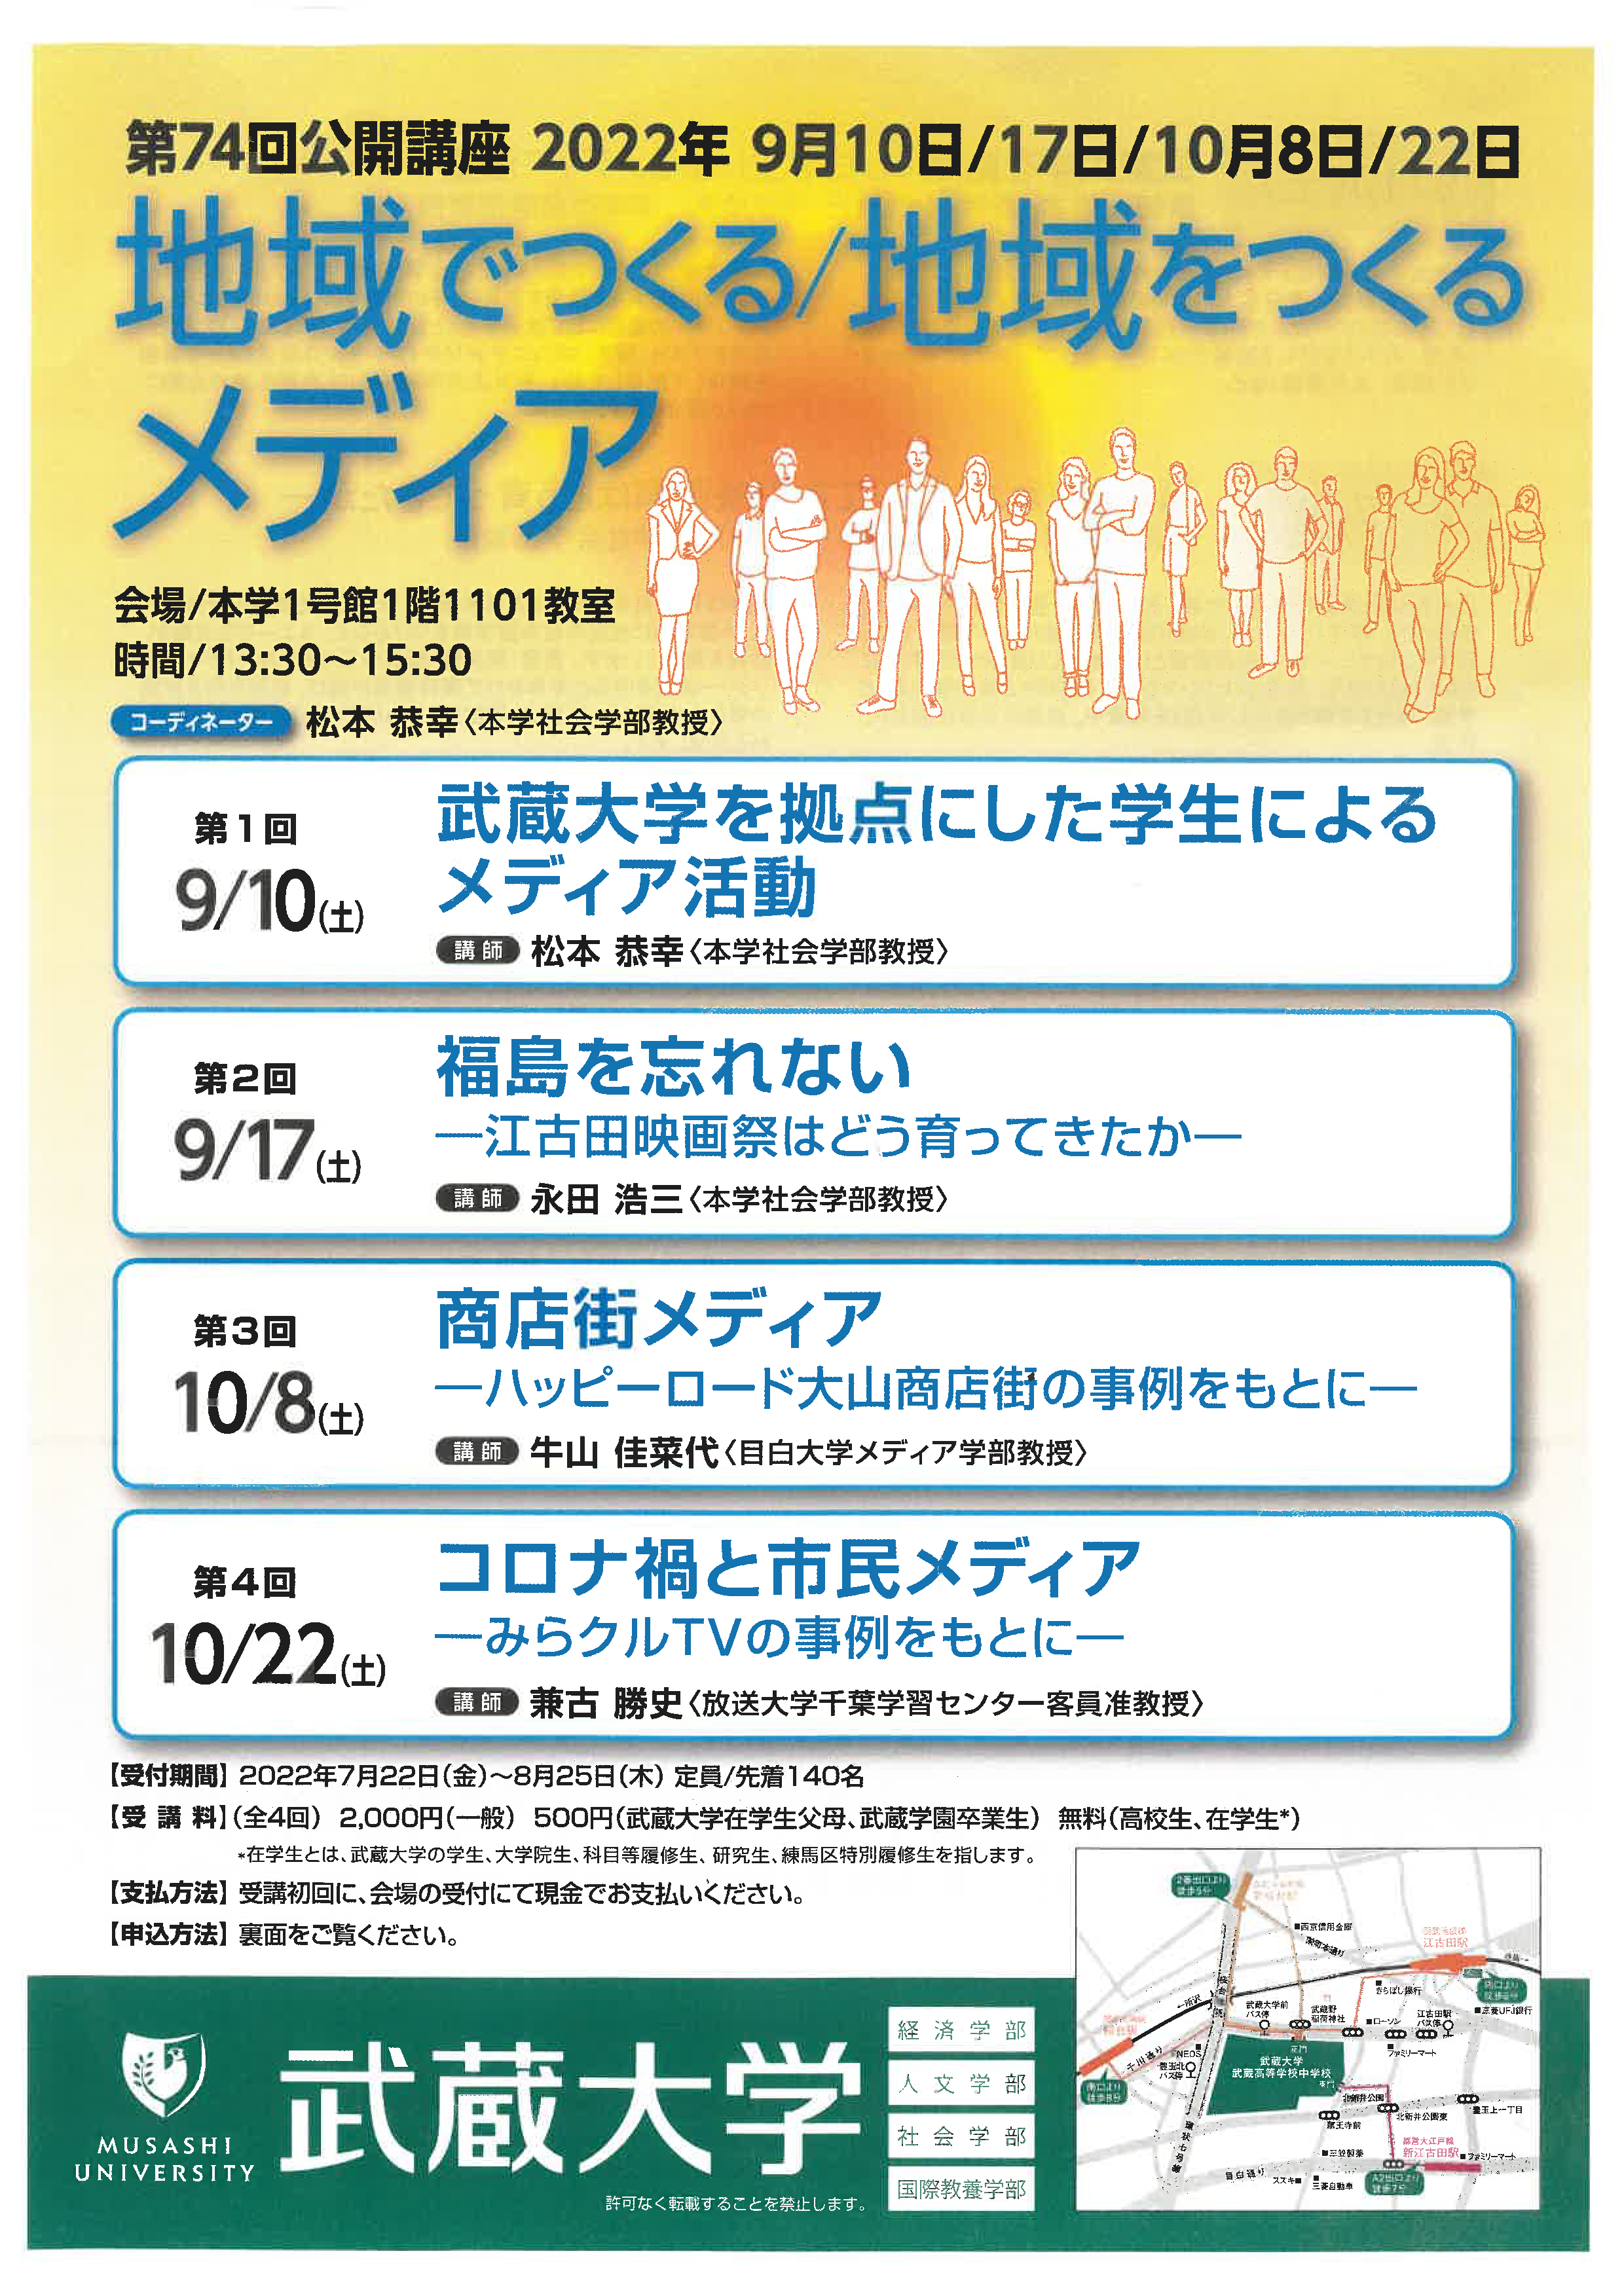 【武蔵大学】第74回公開講座「地域でつくる／地域をつくるメディア」開催